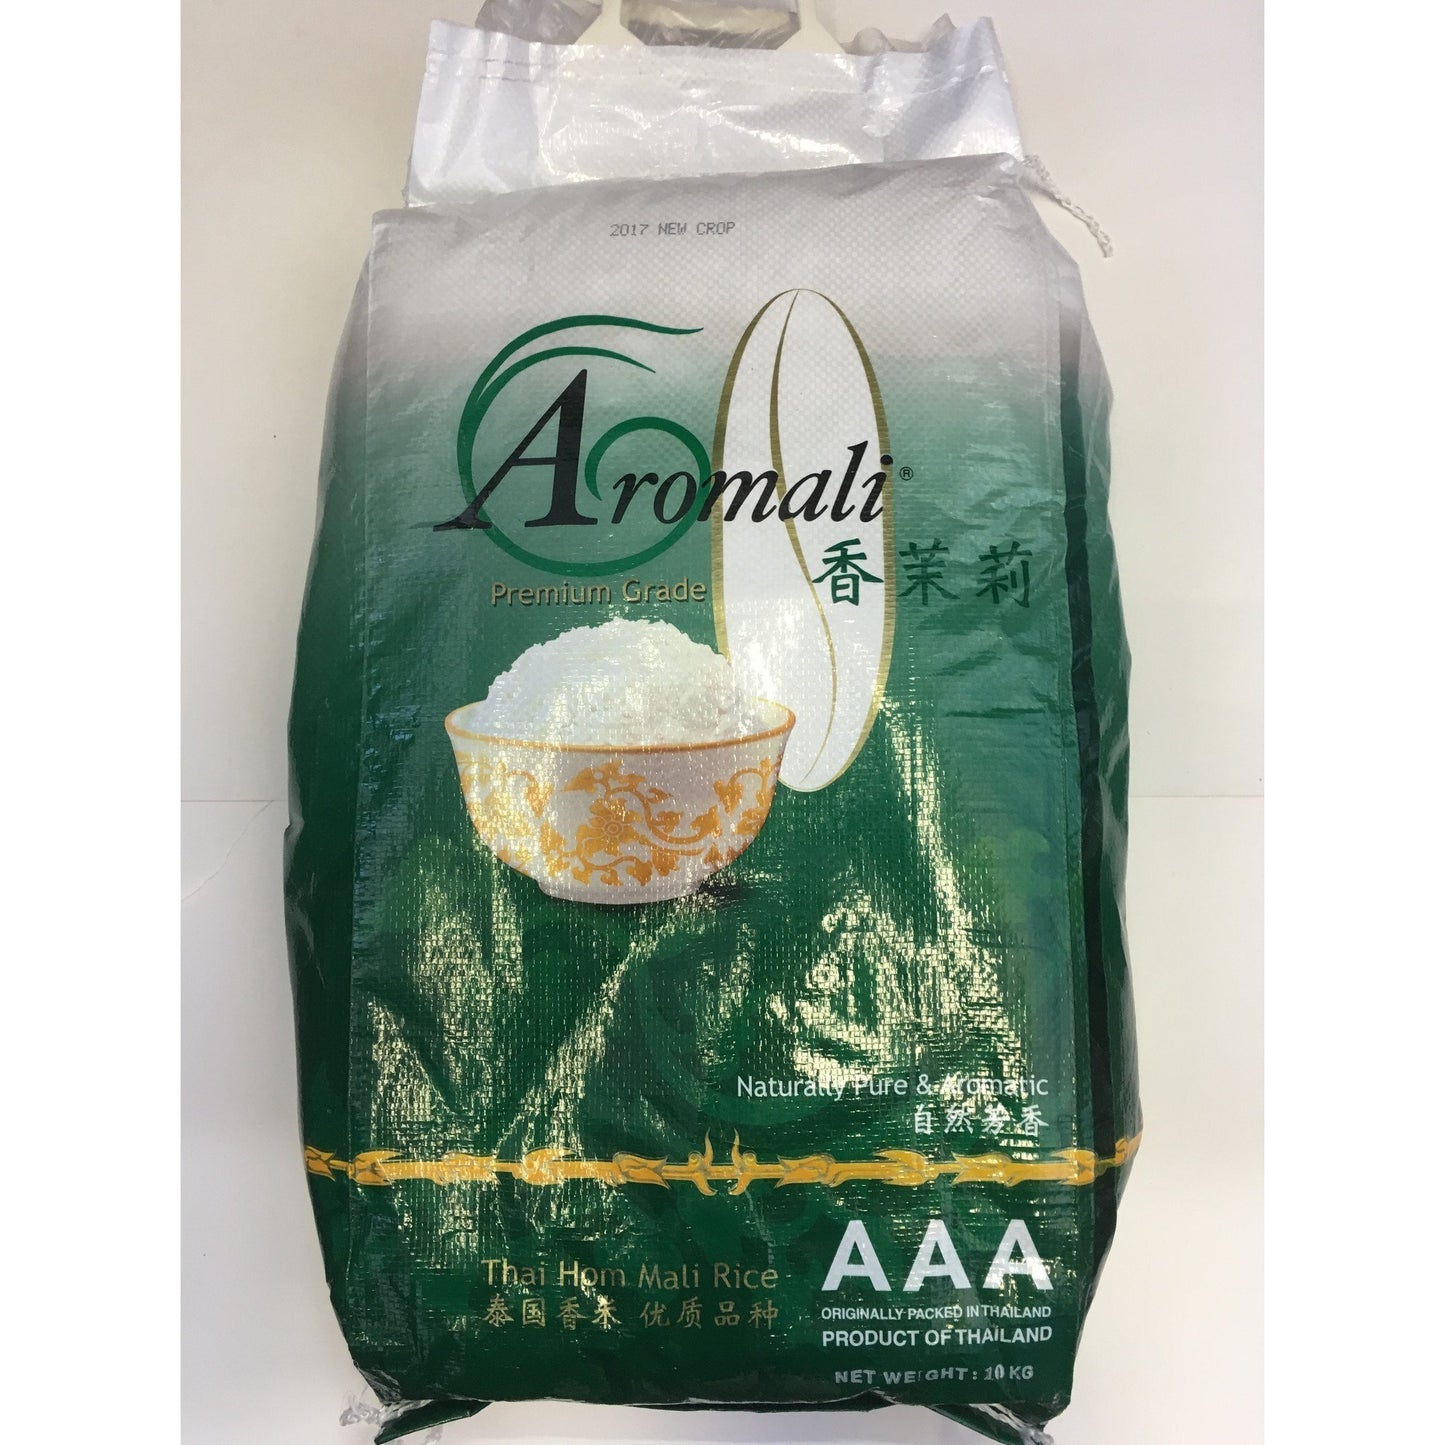 R002M Aromali Brand- Premium grade AAA Thai Jasmine Rice 10kg - 1 bag - New Eastland Pty Ltd - Asian food wholesalers